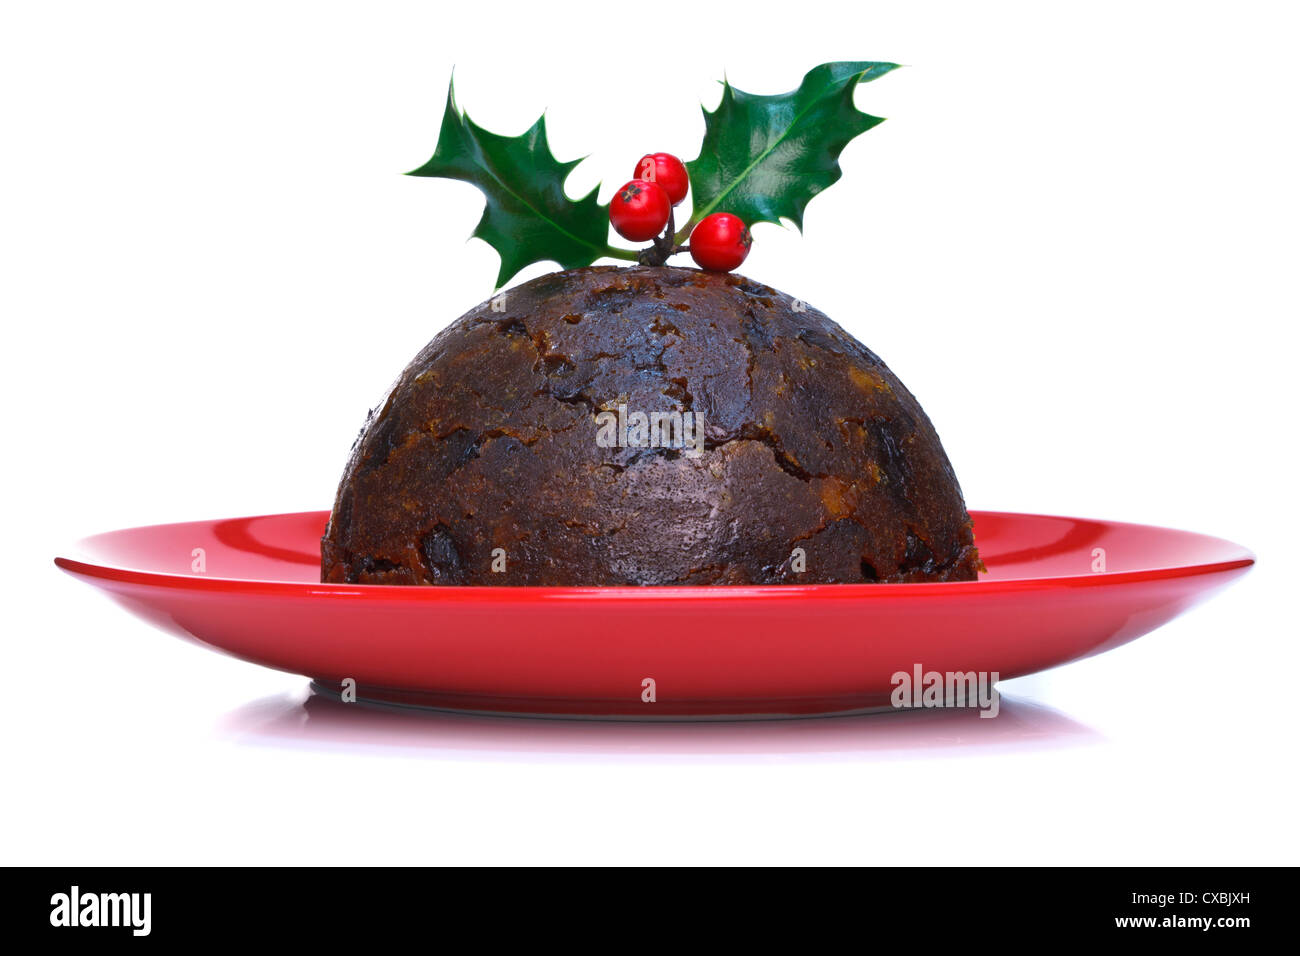 Foto von eine gedämpfte Christmas Pudding mit Holly an der Spitze isoliert auf einem weißen Hintergrund. Stockfoto